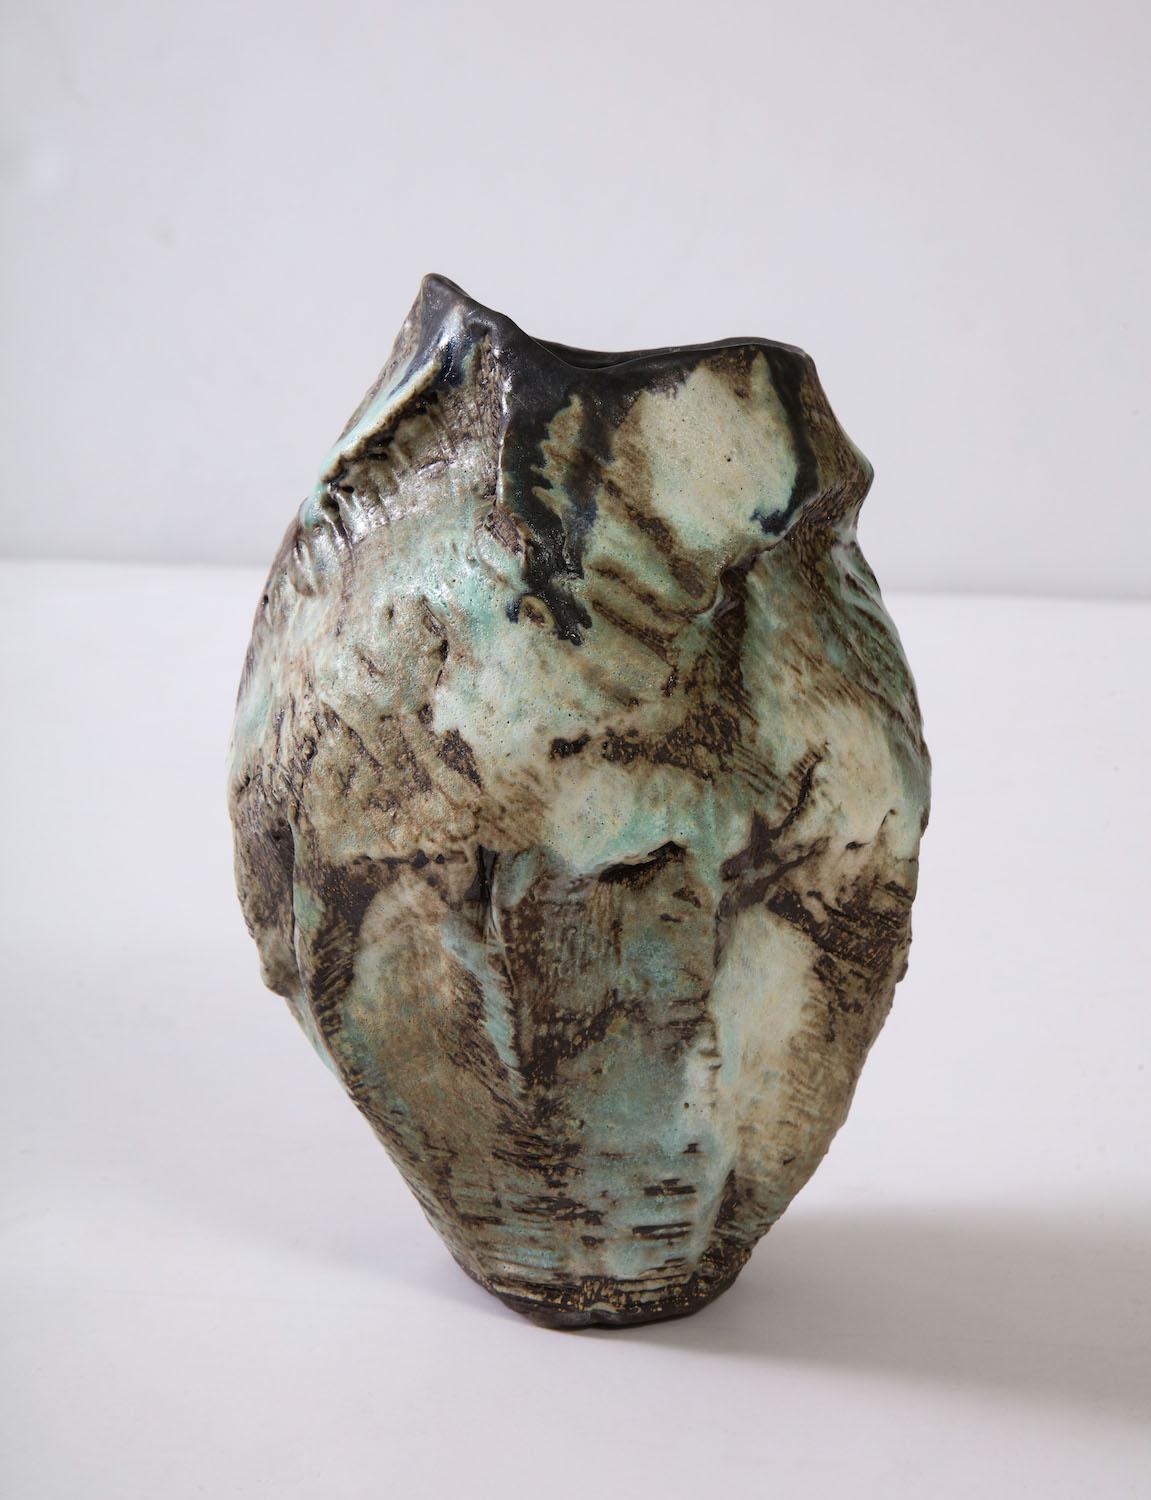 Sculptural vase #6 by Dena Zemsky. Hand-built, glazed stoneware vase form. Signed and dated on underside.
       